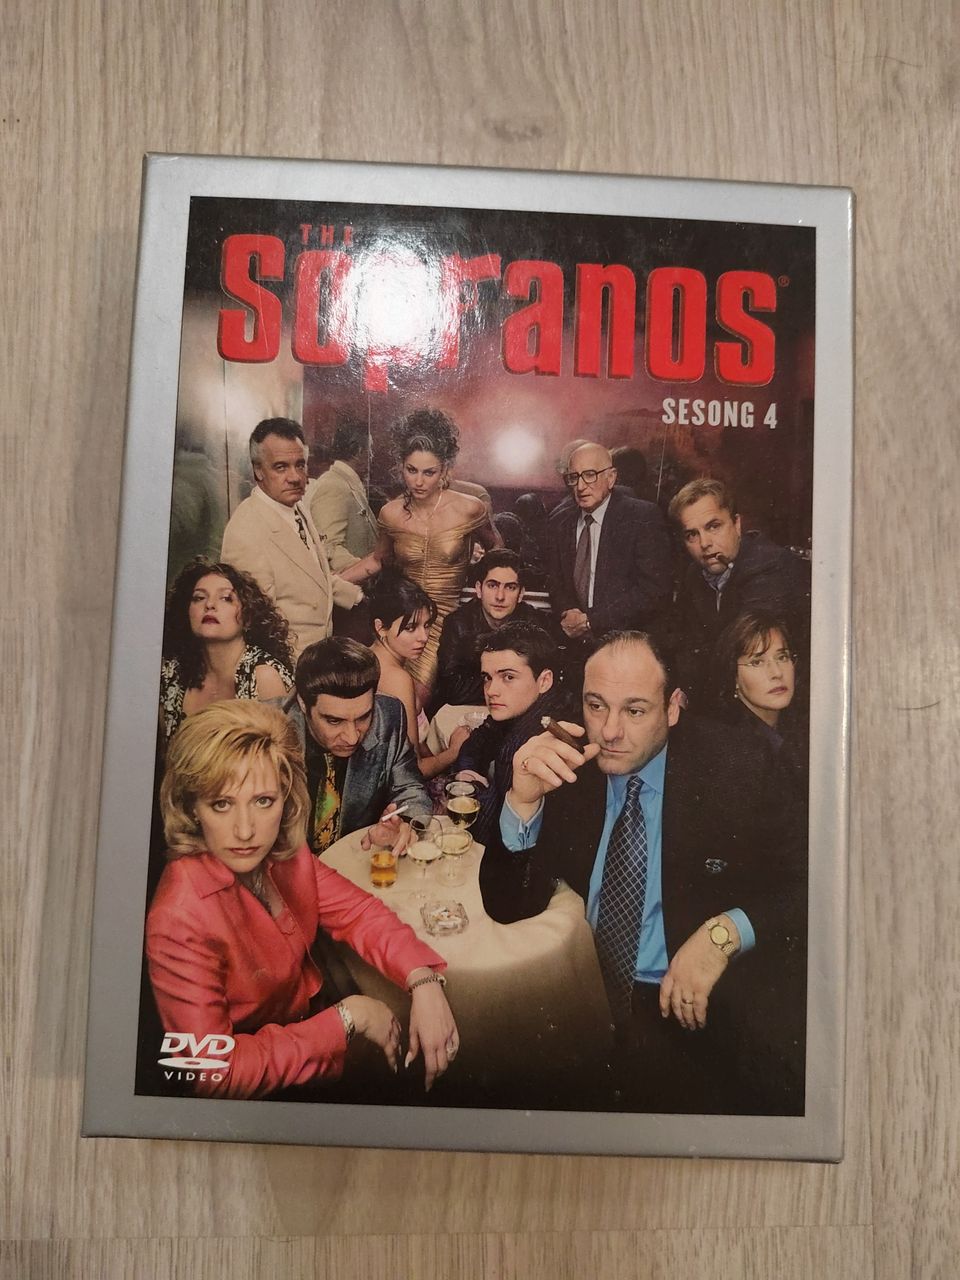 Sopranos Season 4